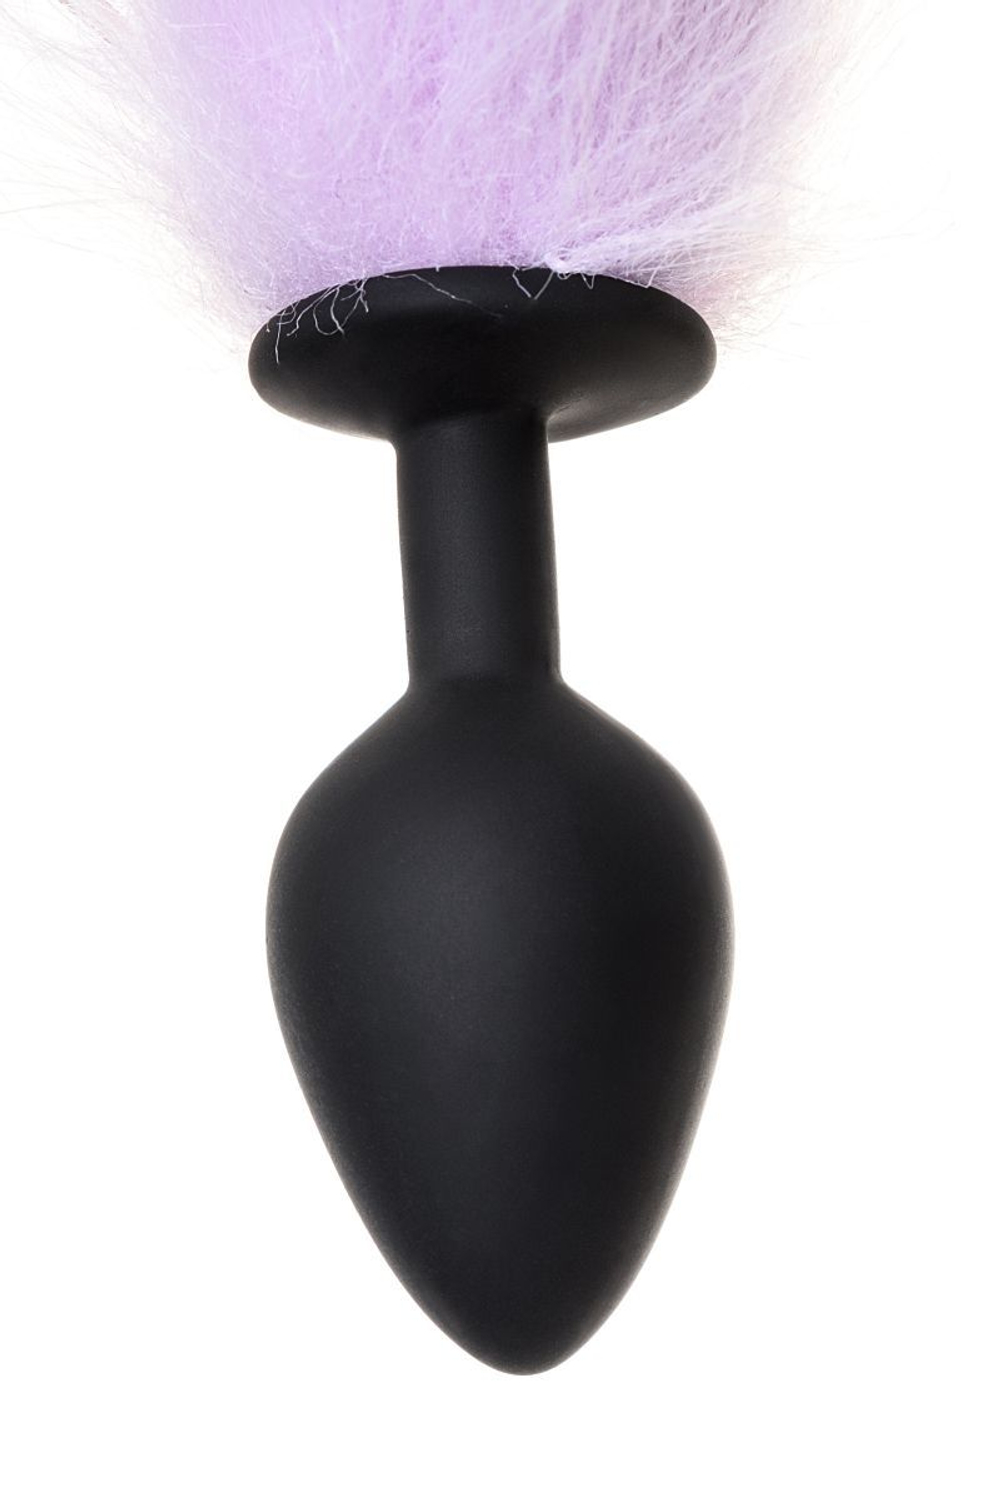 Черная анальная втулка с фиолетово-белым хвостиком - размер M